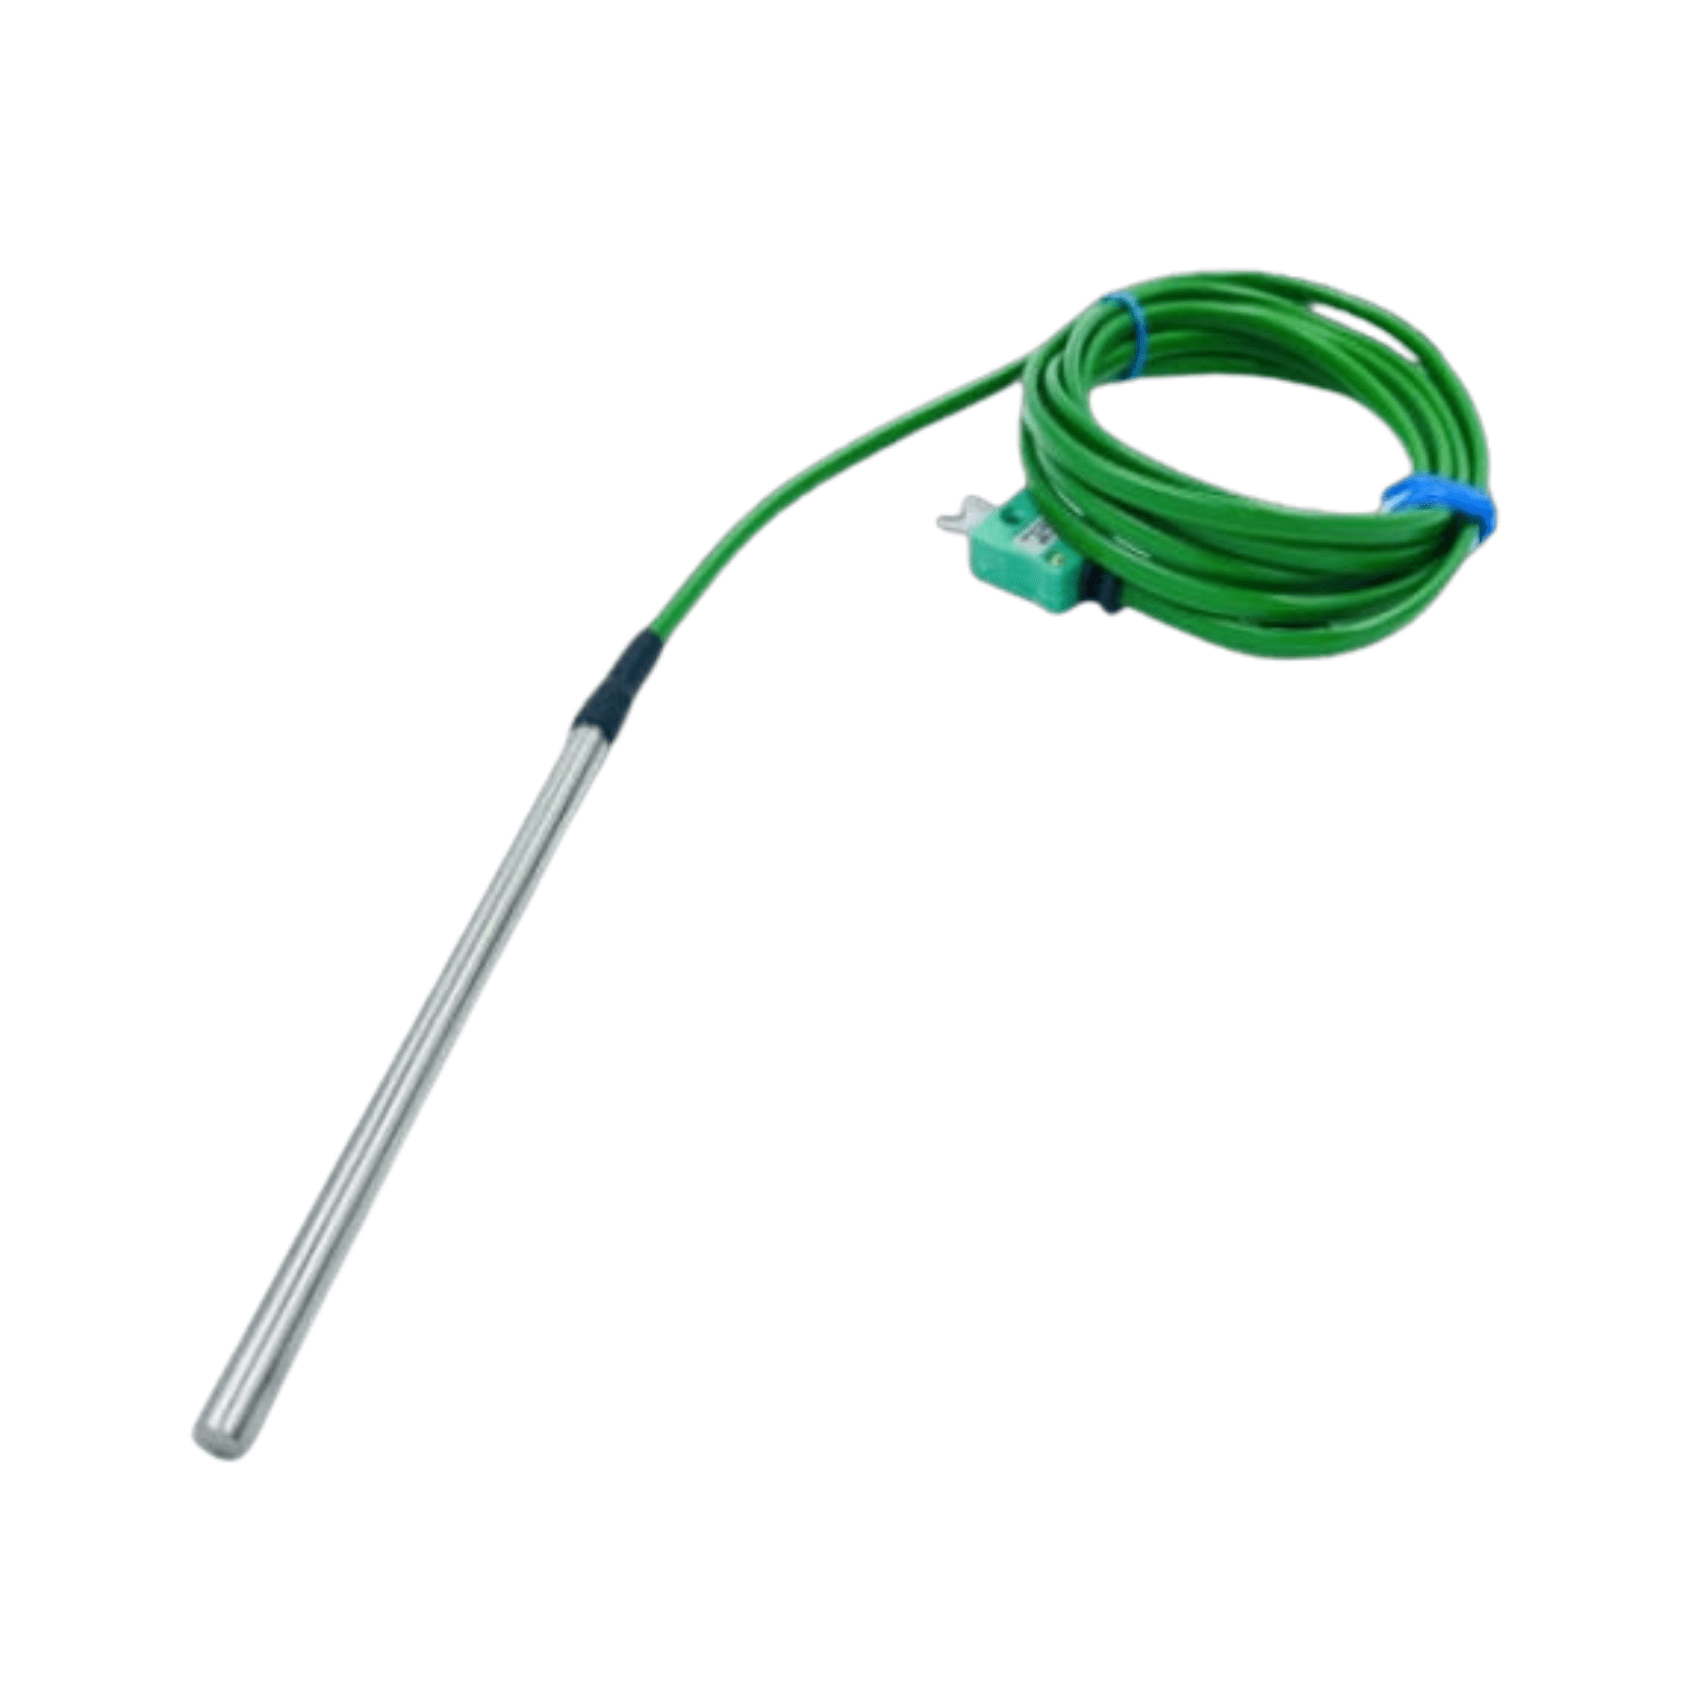 Un thermomètre Thermomètre.fr vert avec un fil attaché à sa Sonde de température à usage général diamètre 6 mm pour les applications de température.